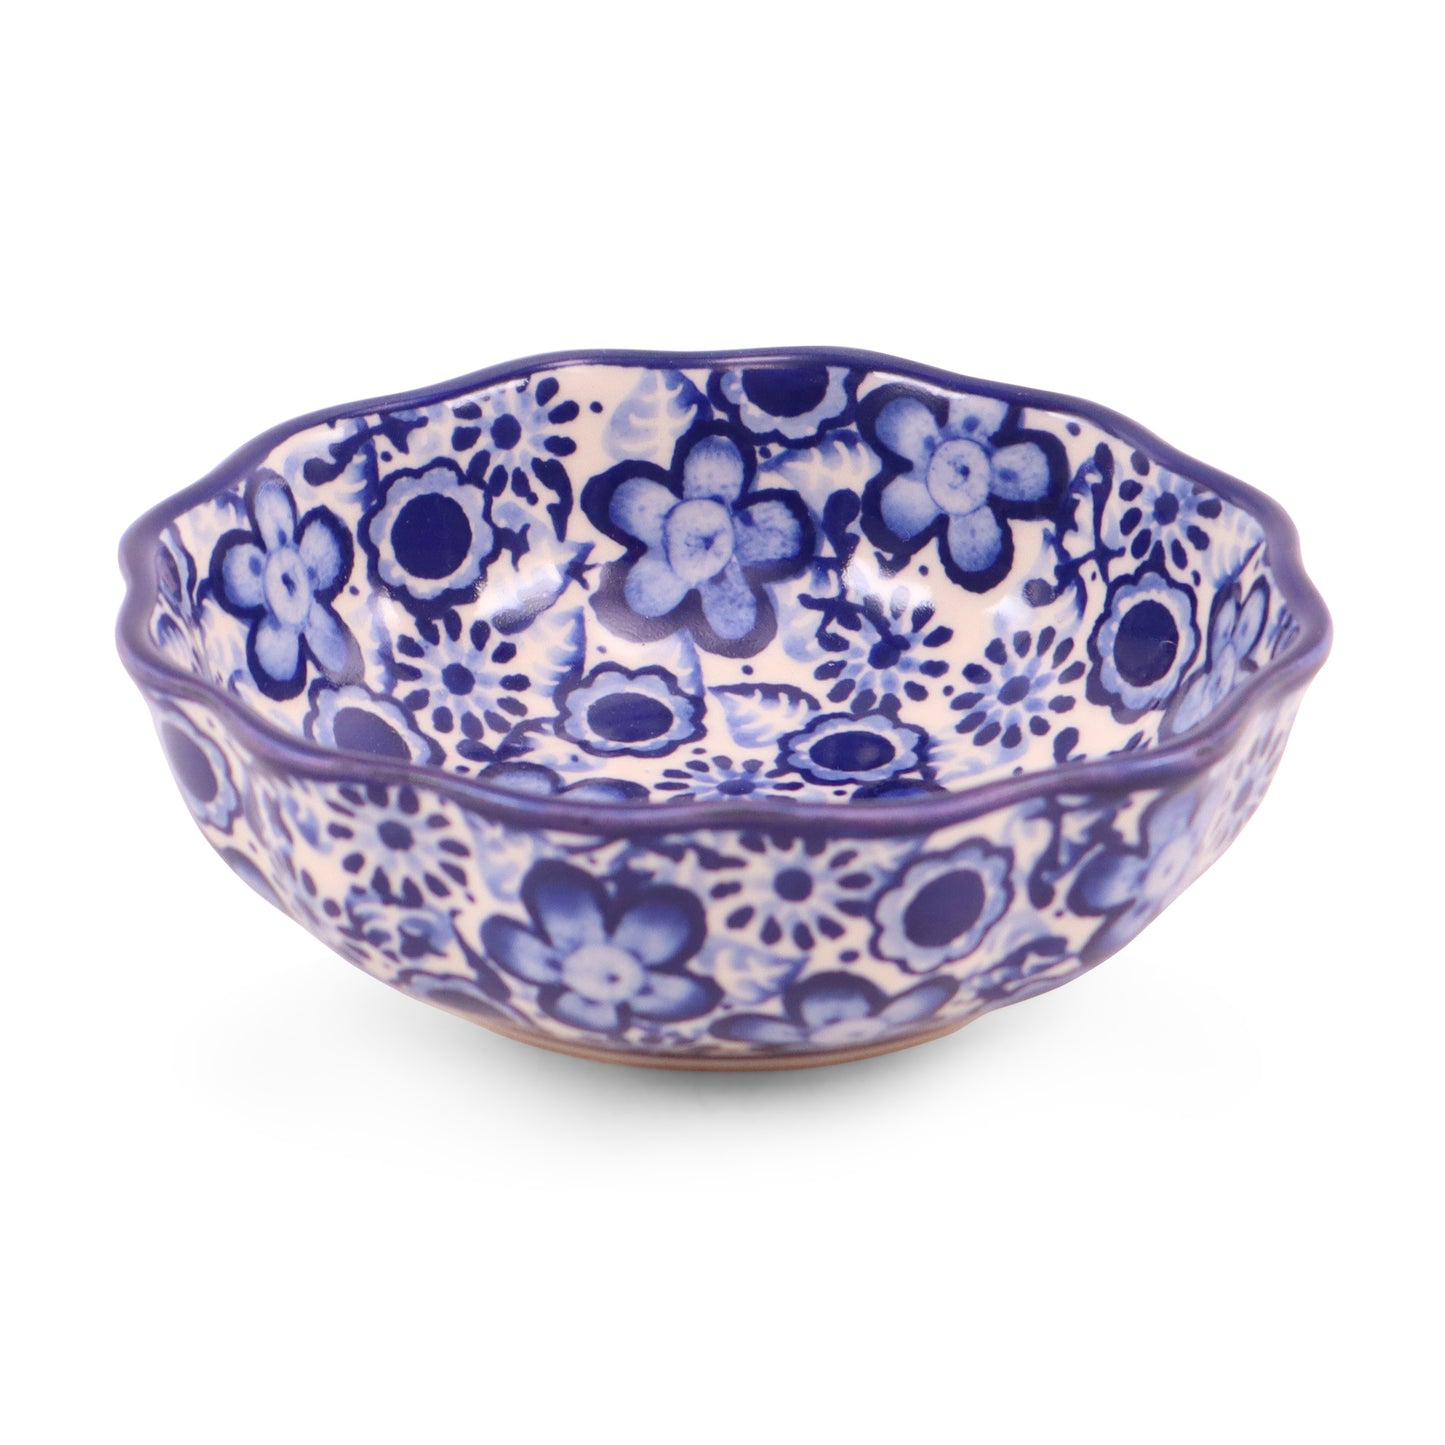 4.5" Waved Bowl. Pattern: Mazurek Blue